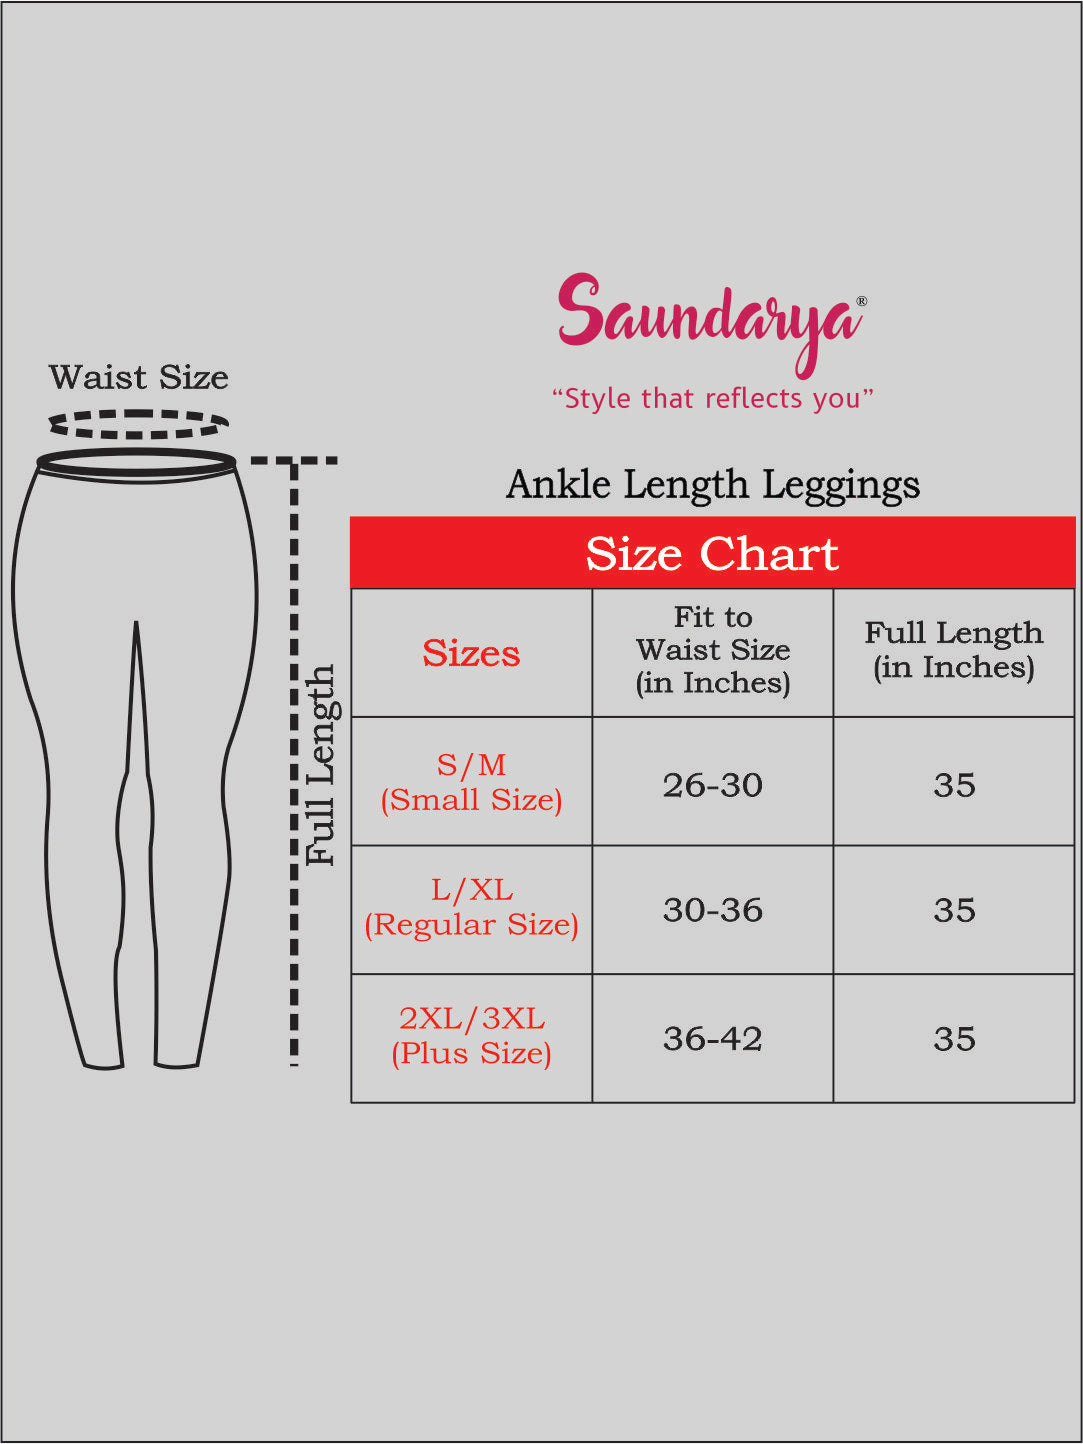 Saundarya Women's Olive Green Ankle Length Leggings Cotton